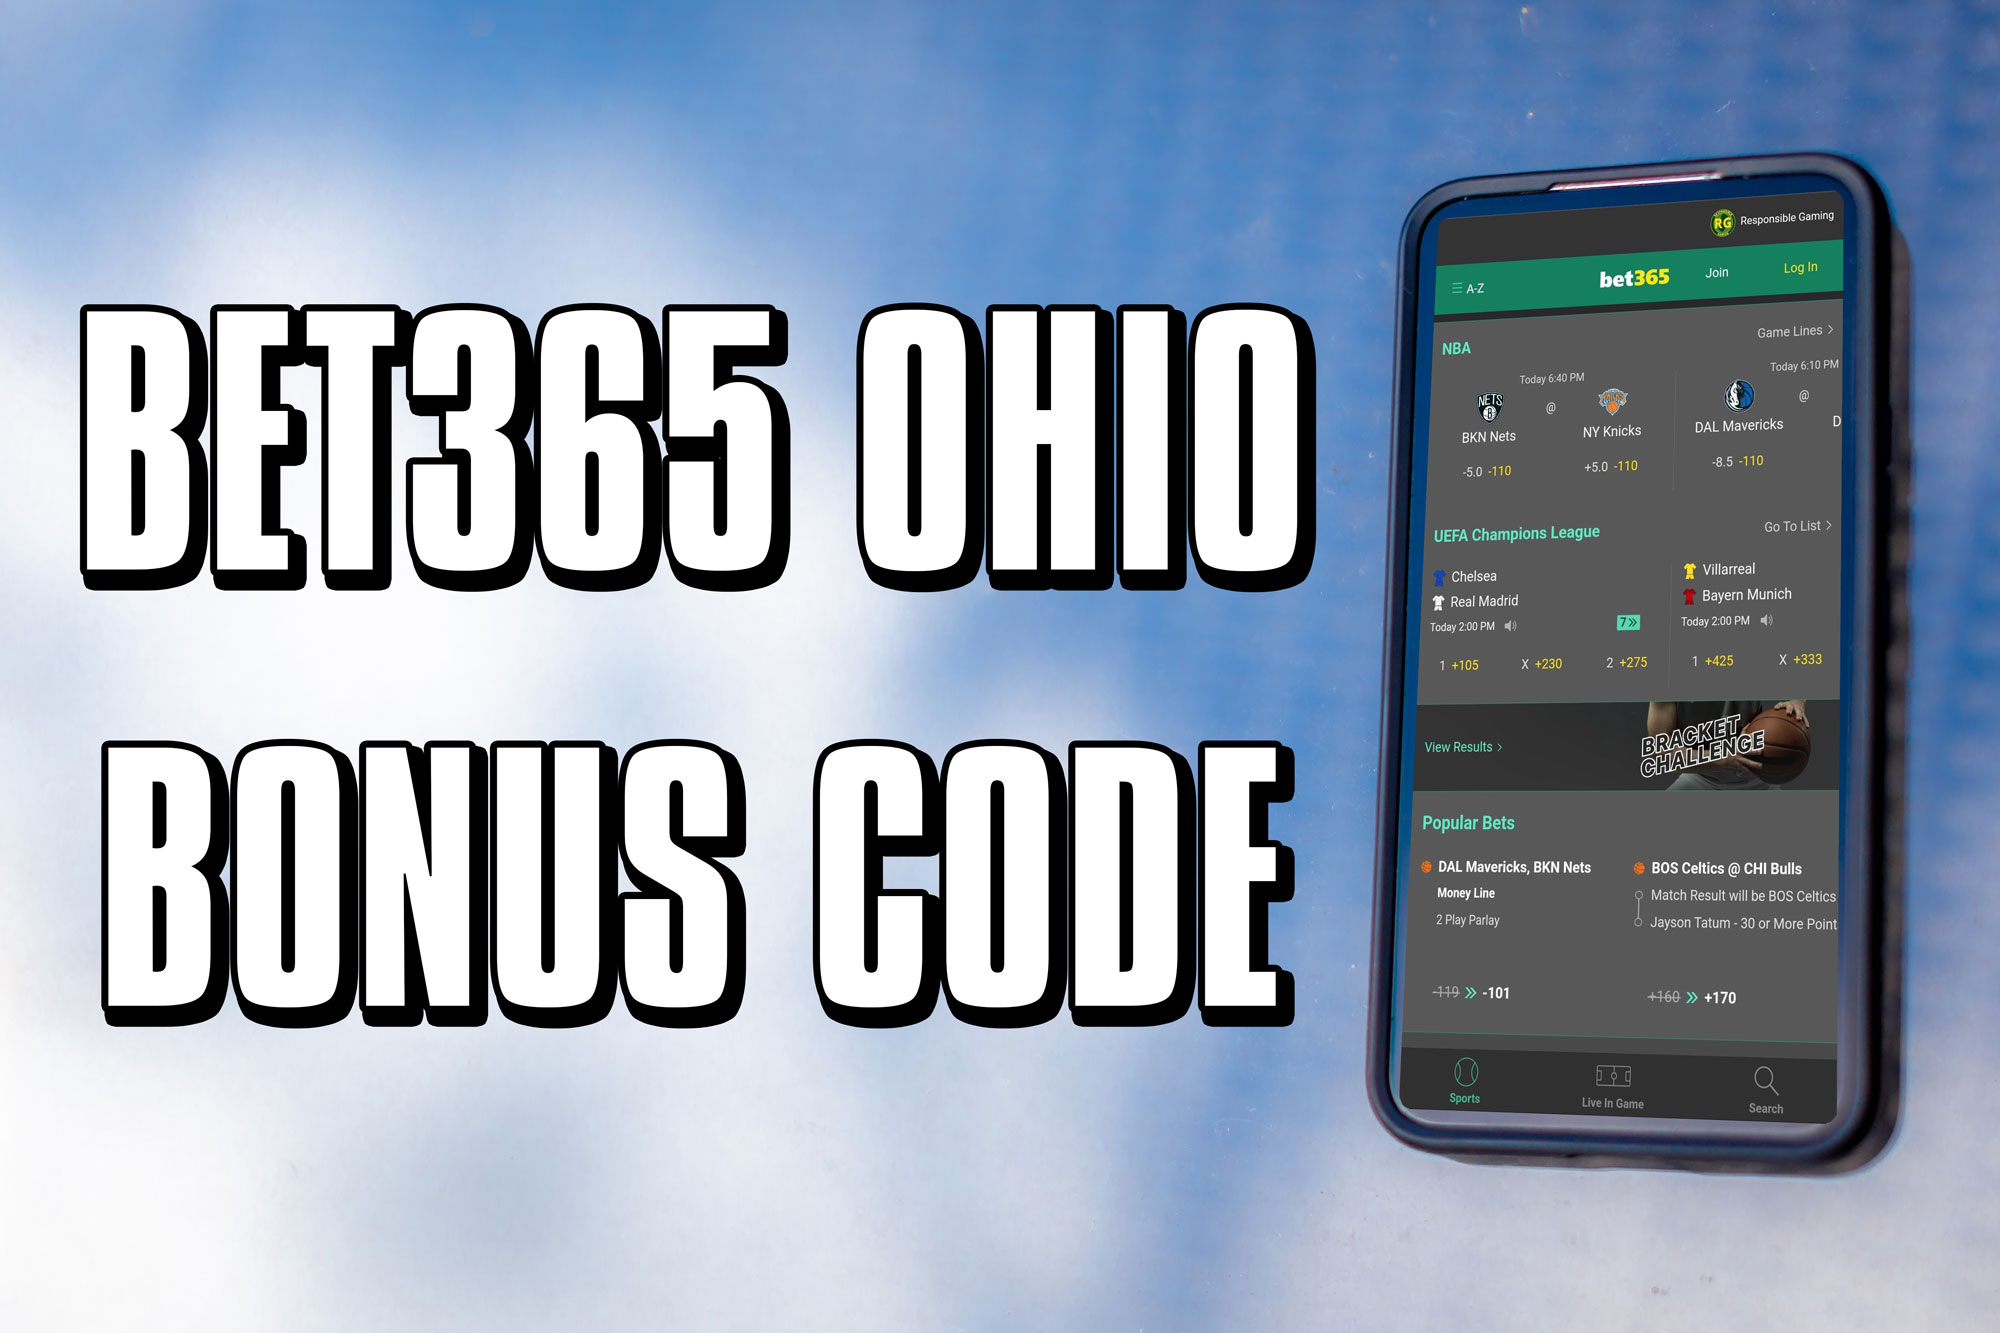 Bet365 Ohio bonus code: $1 NBA Finals bet scores $200 bonus - cleveland.com